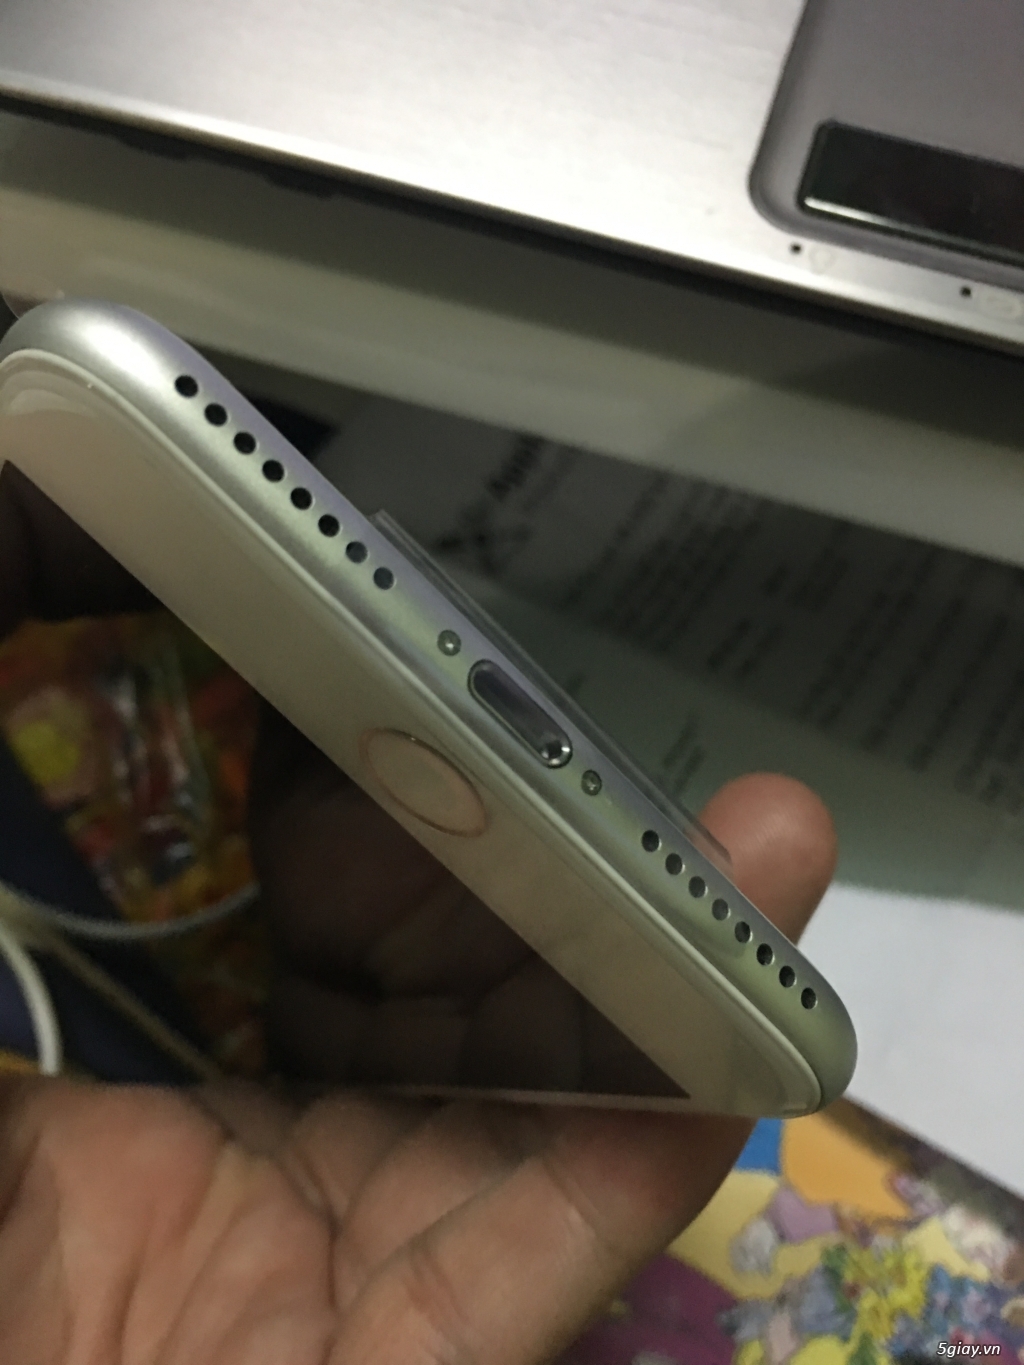 iphone 7 Plus 32Gb Trắng bạc TBH máy mới 100% chưa active (còn BH) - 2